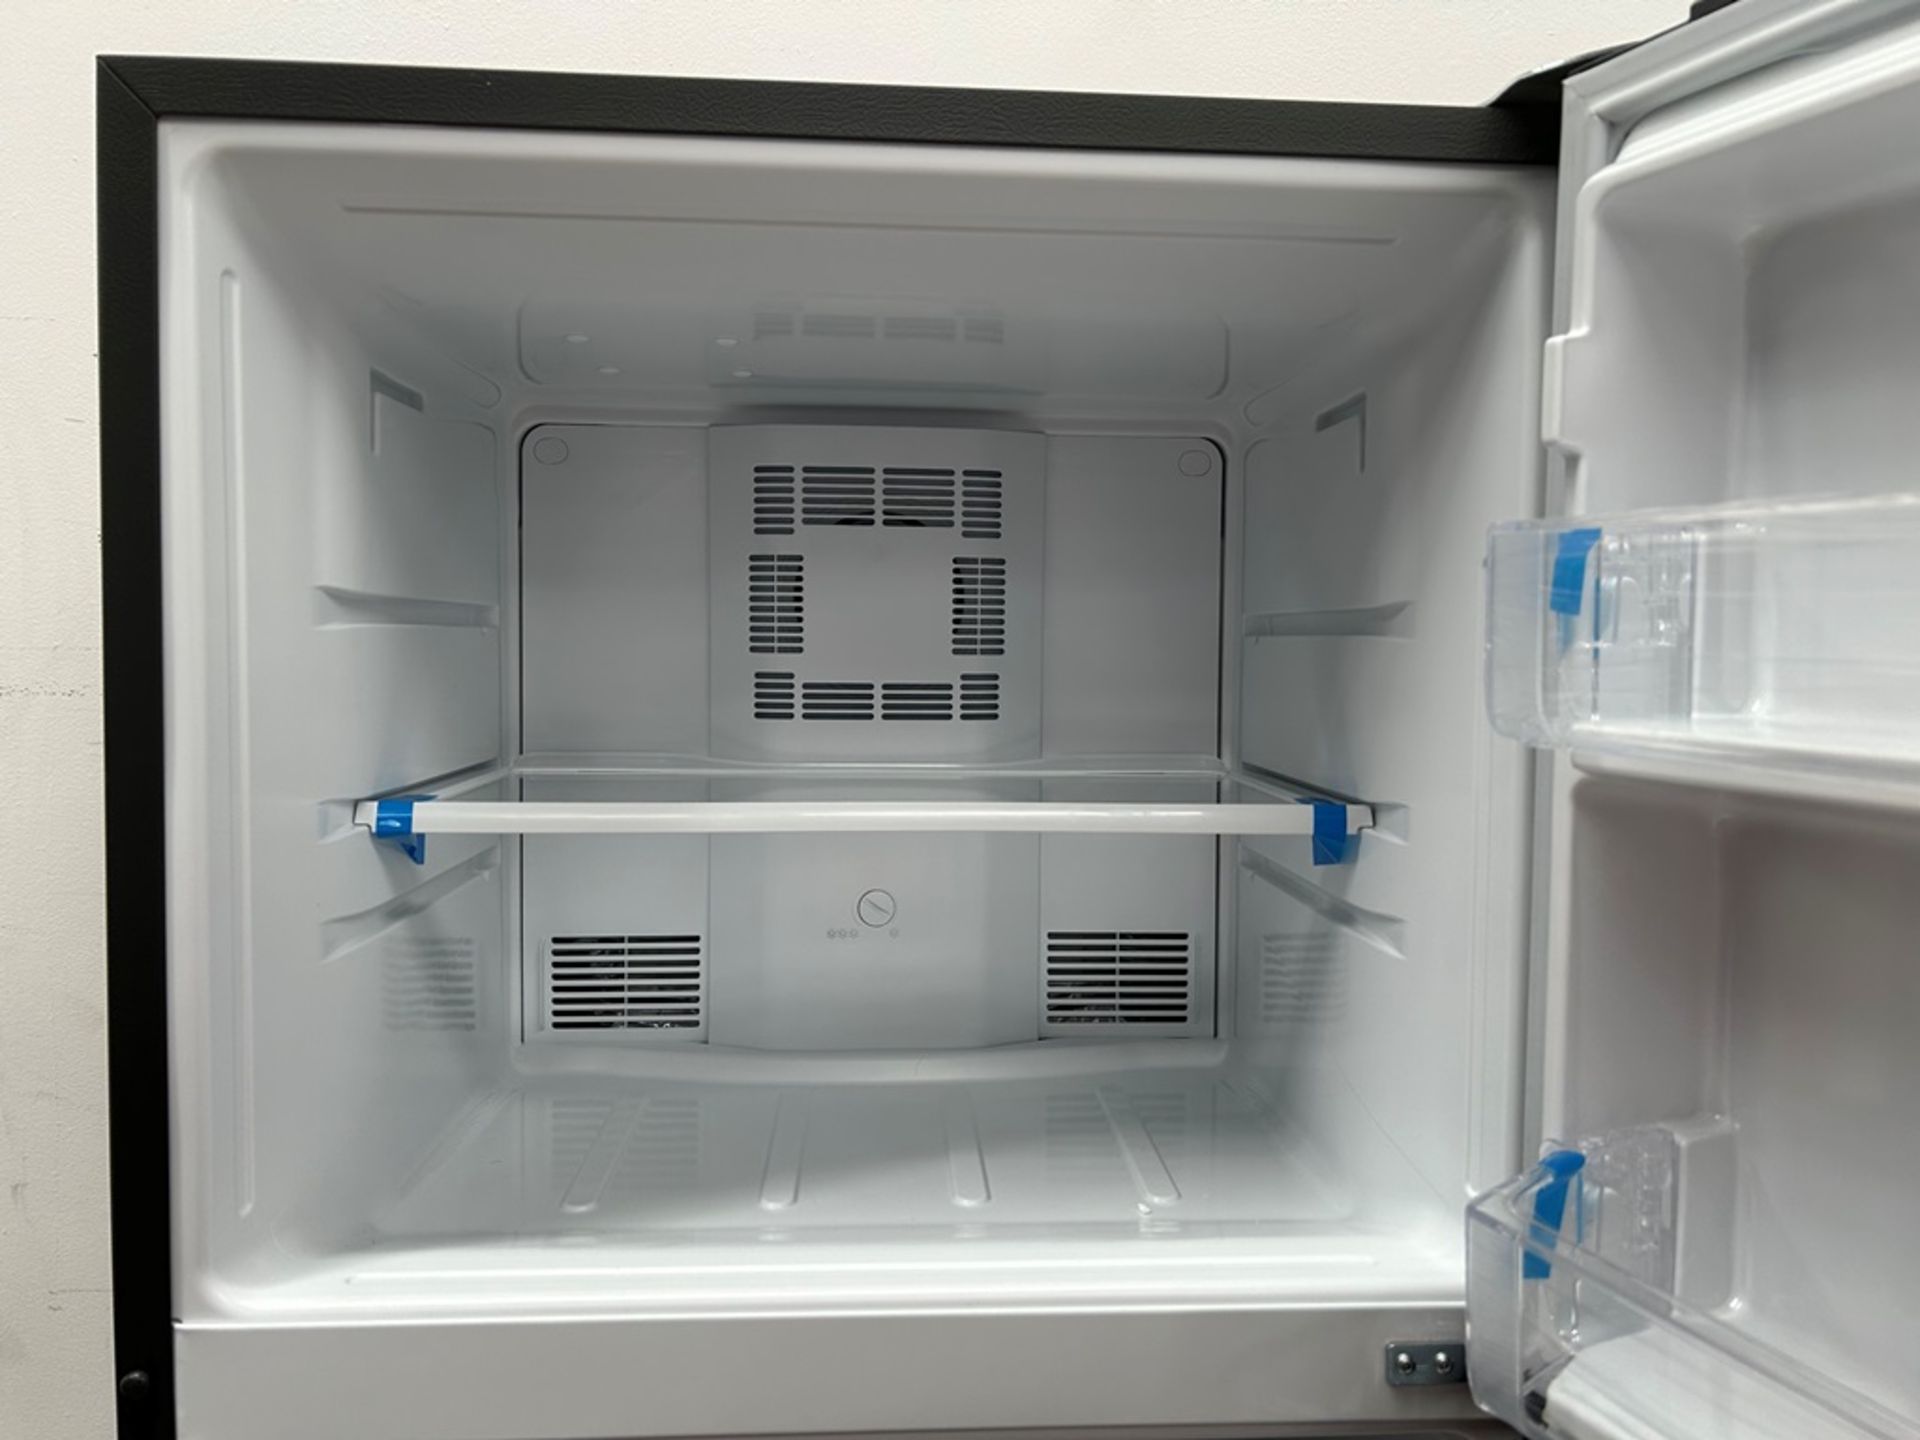 Lote de 2 refrigeradores contiene: 1 refrigerador Marca MABE, Modelo RME360FVMRMA, Serie 816455, Co - Image 12 of 18